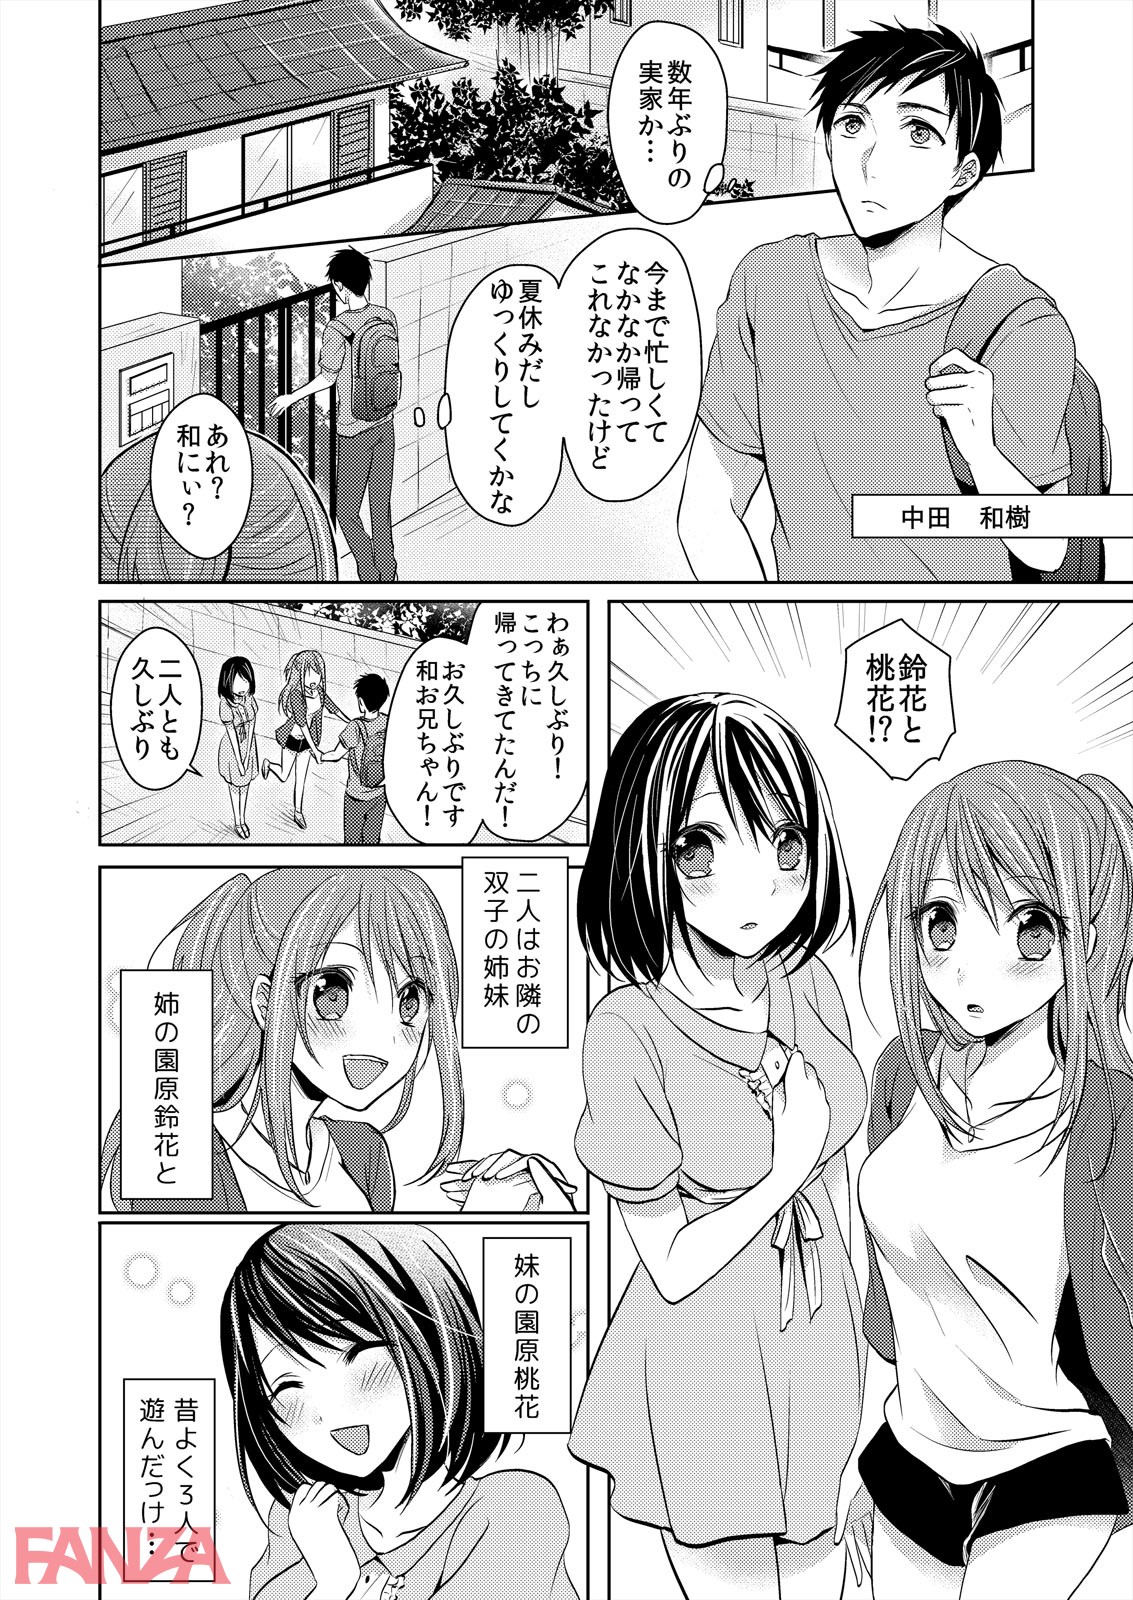 【エロ漫画】ふたご姉妹と密着3P生活、はじめました。【完全版】 - ページ003